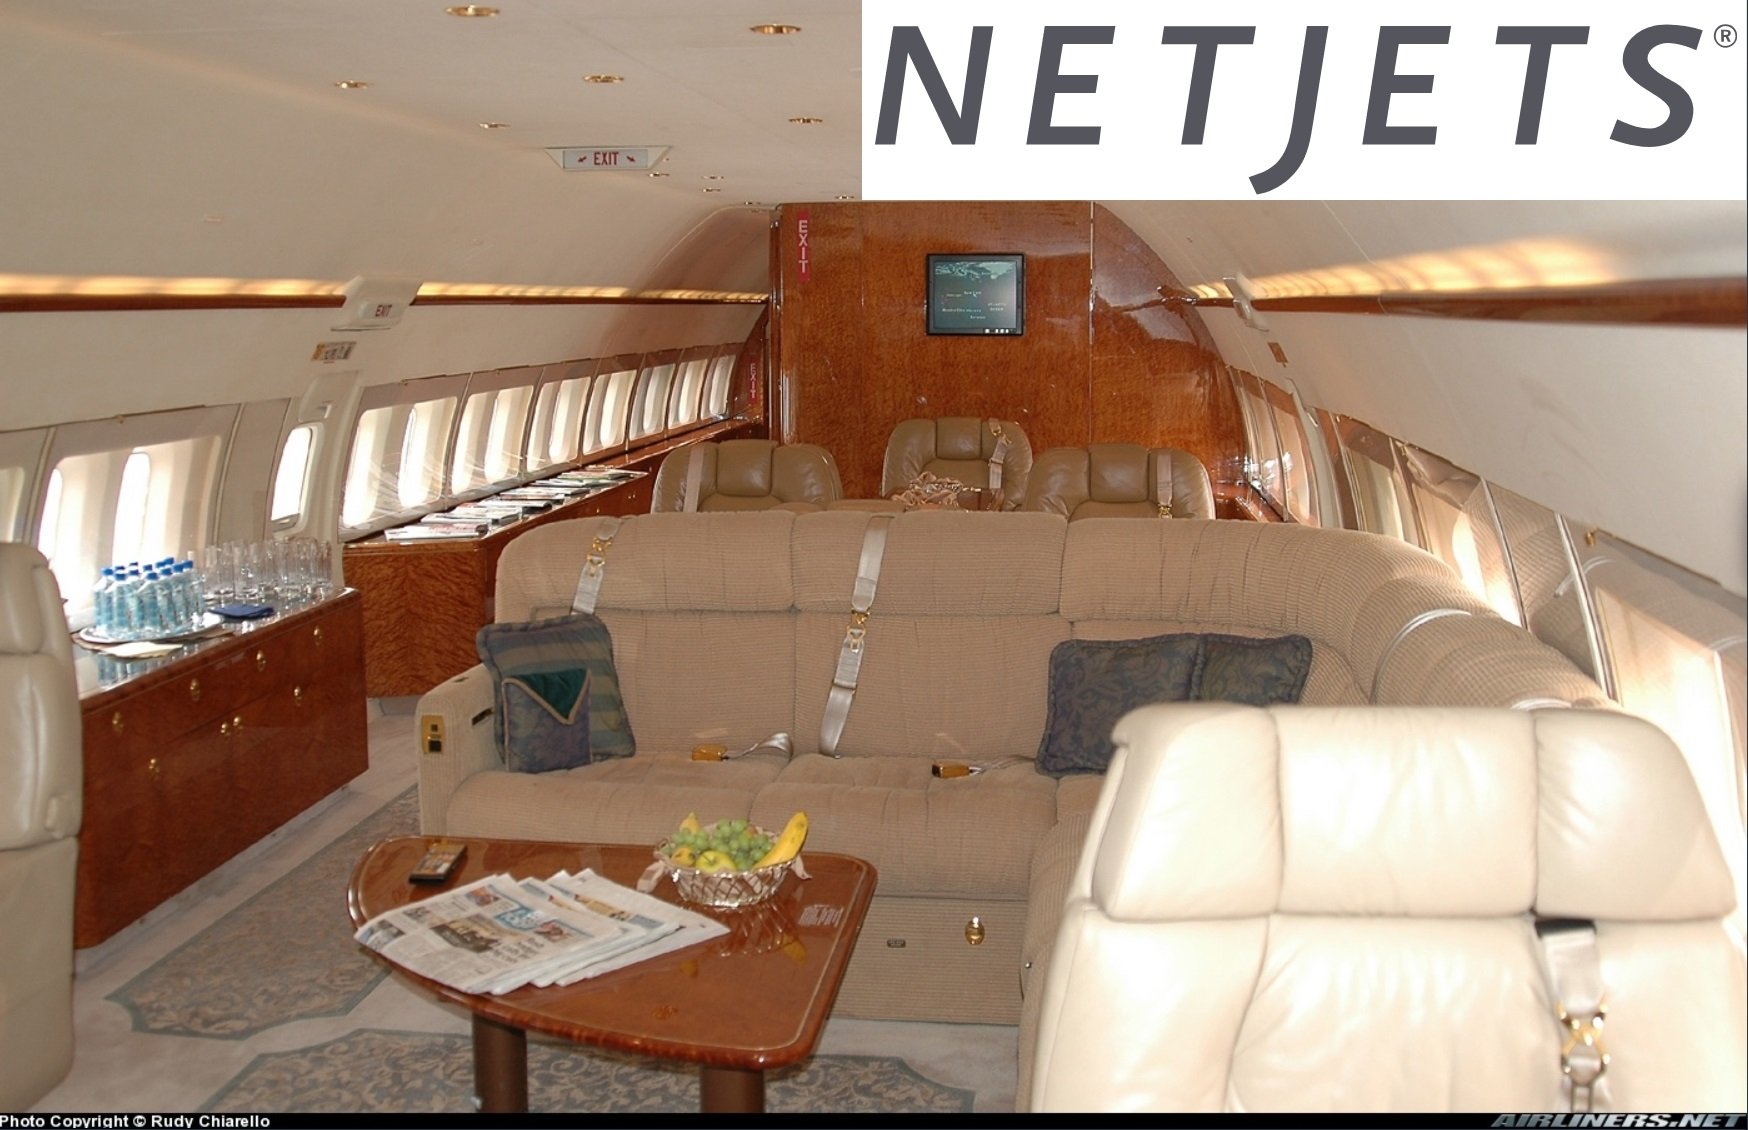 Net Jets Boeing 737 N129QS interior